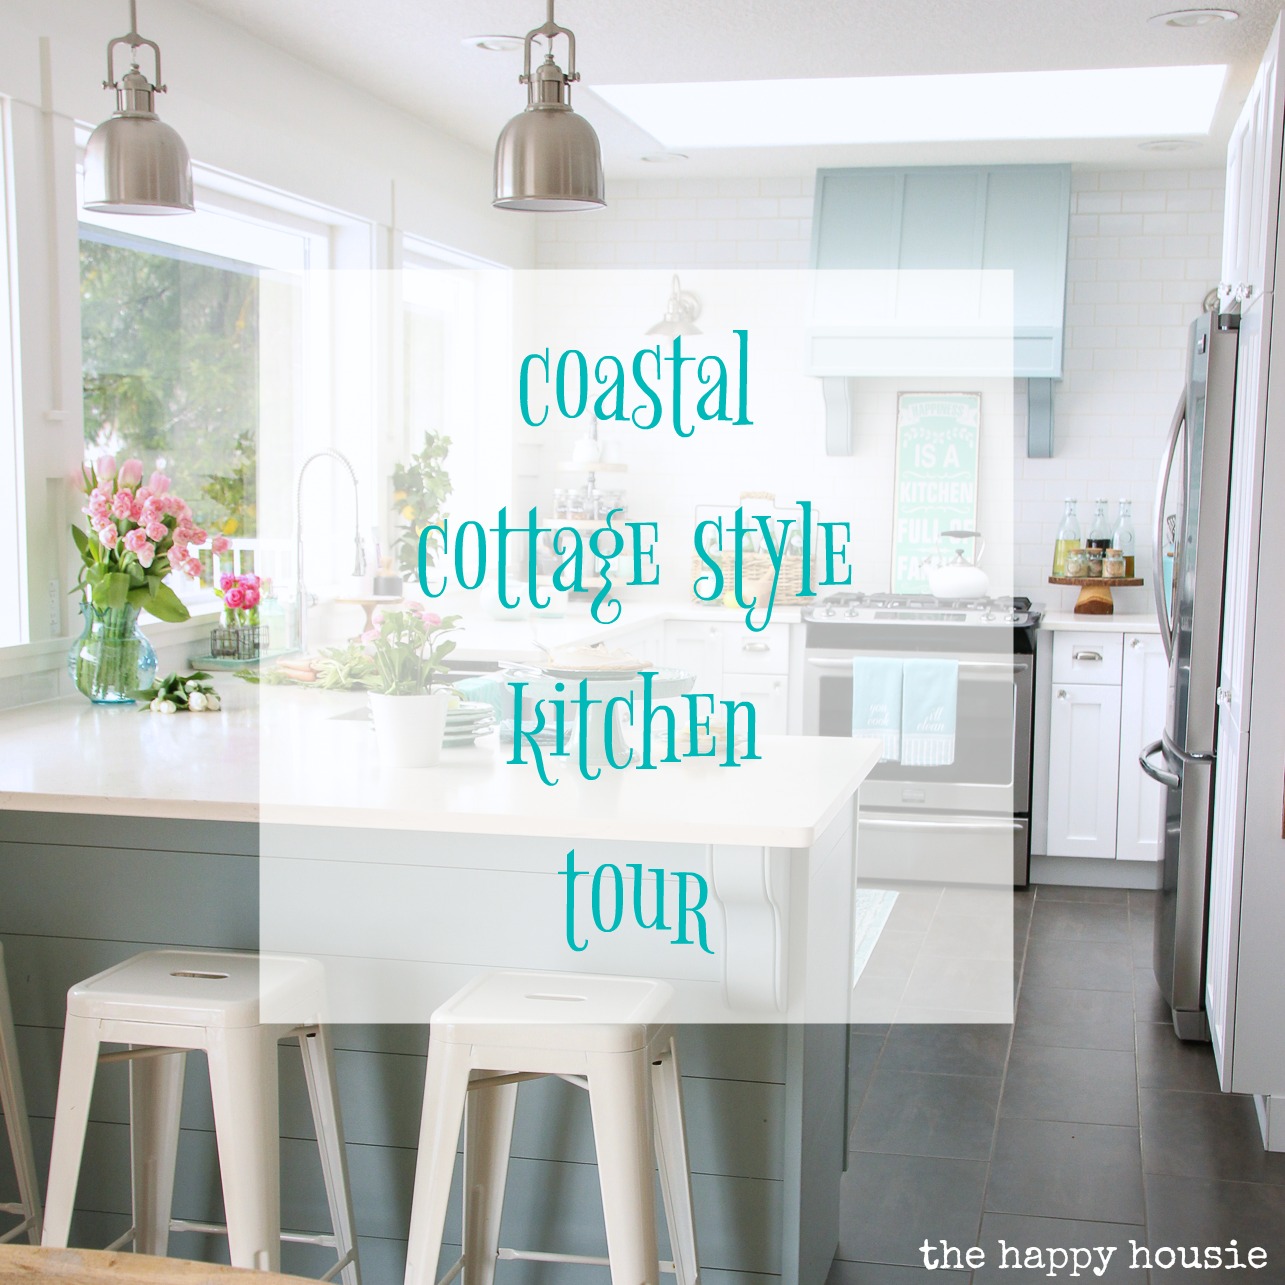 Coastal Cottage Style Kitchen Tour graphic.